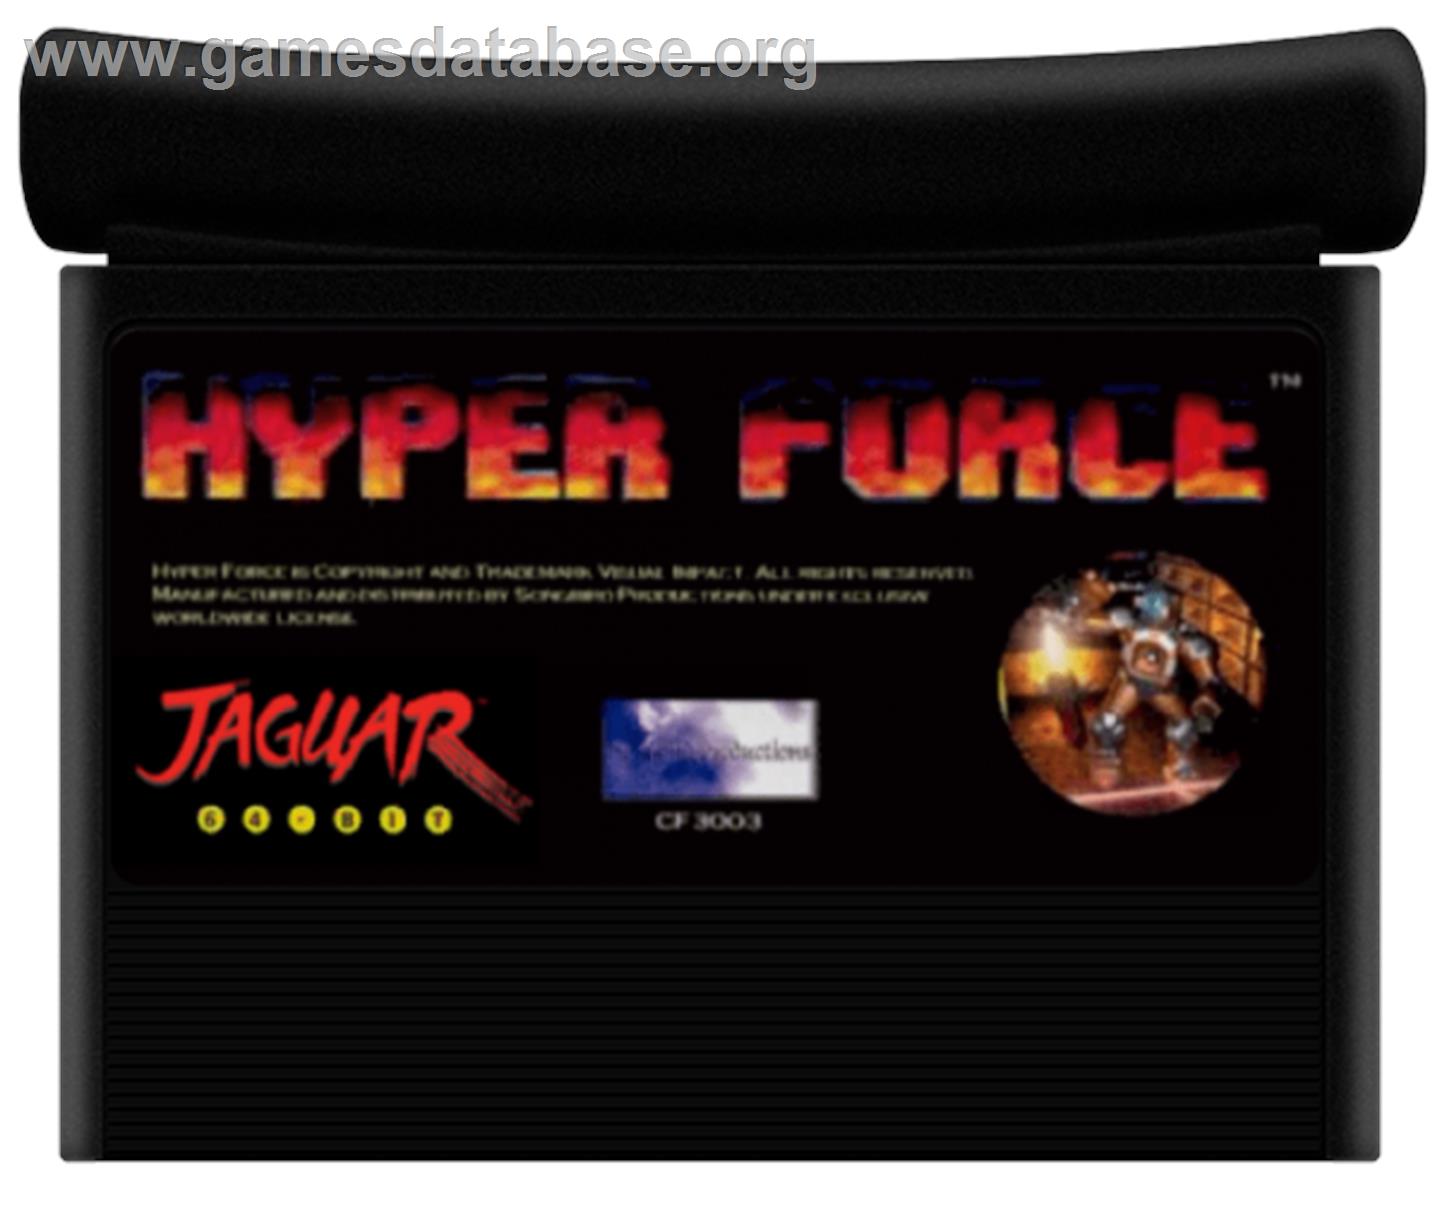 Hyper Force - Atari Jaguar - Artwork - Cartridge